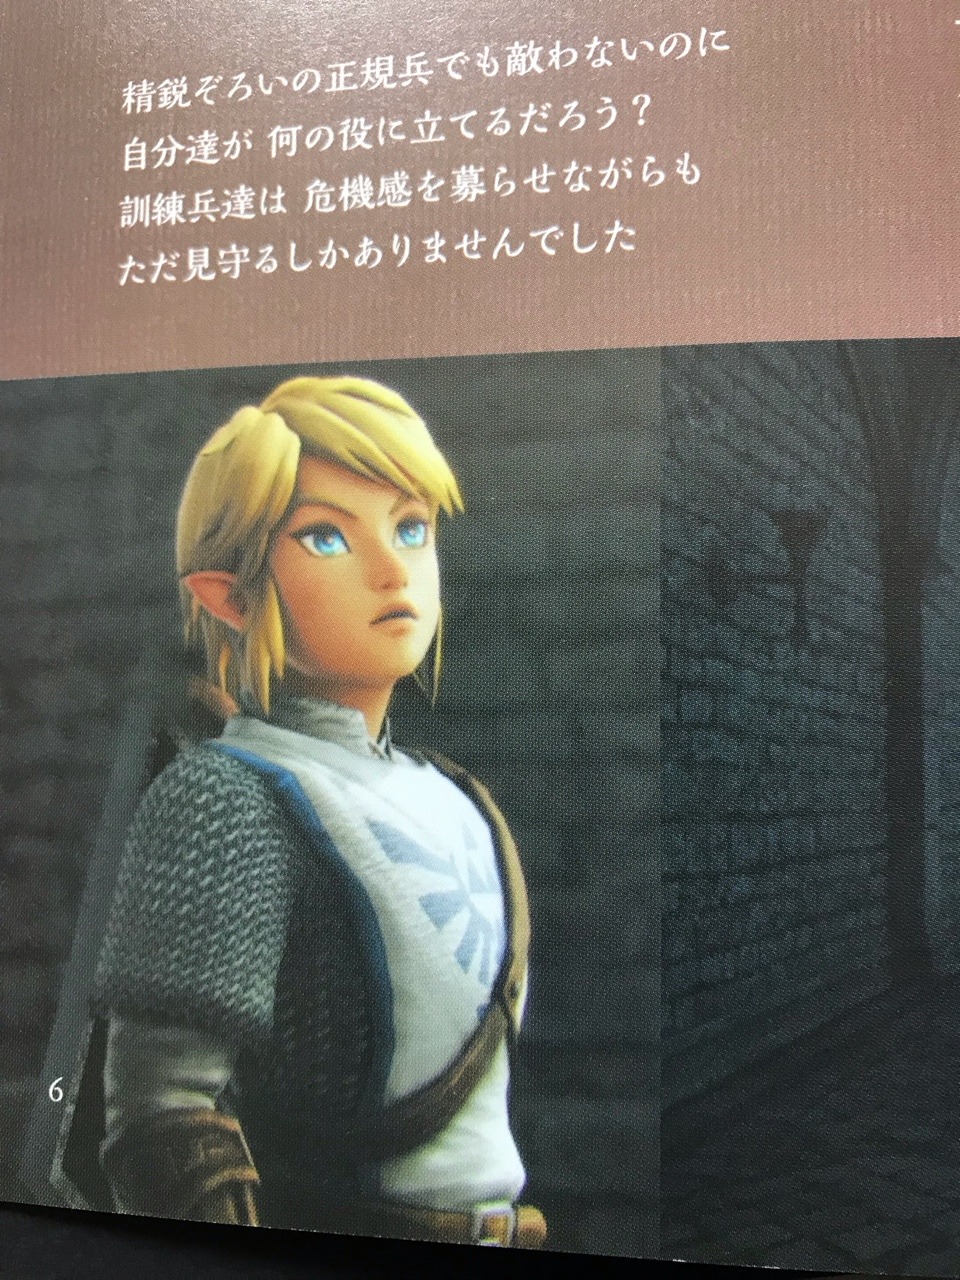 Zelda Link ゼルダ無双資料集きたーー ーー リンクぅぅぅぅ かっこいい ゼル